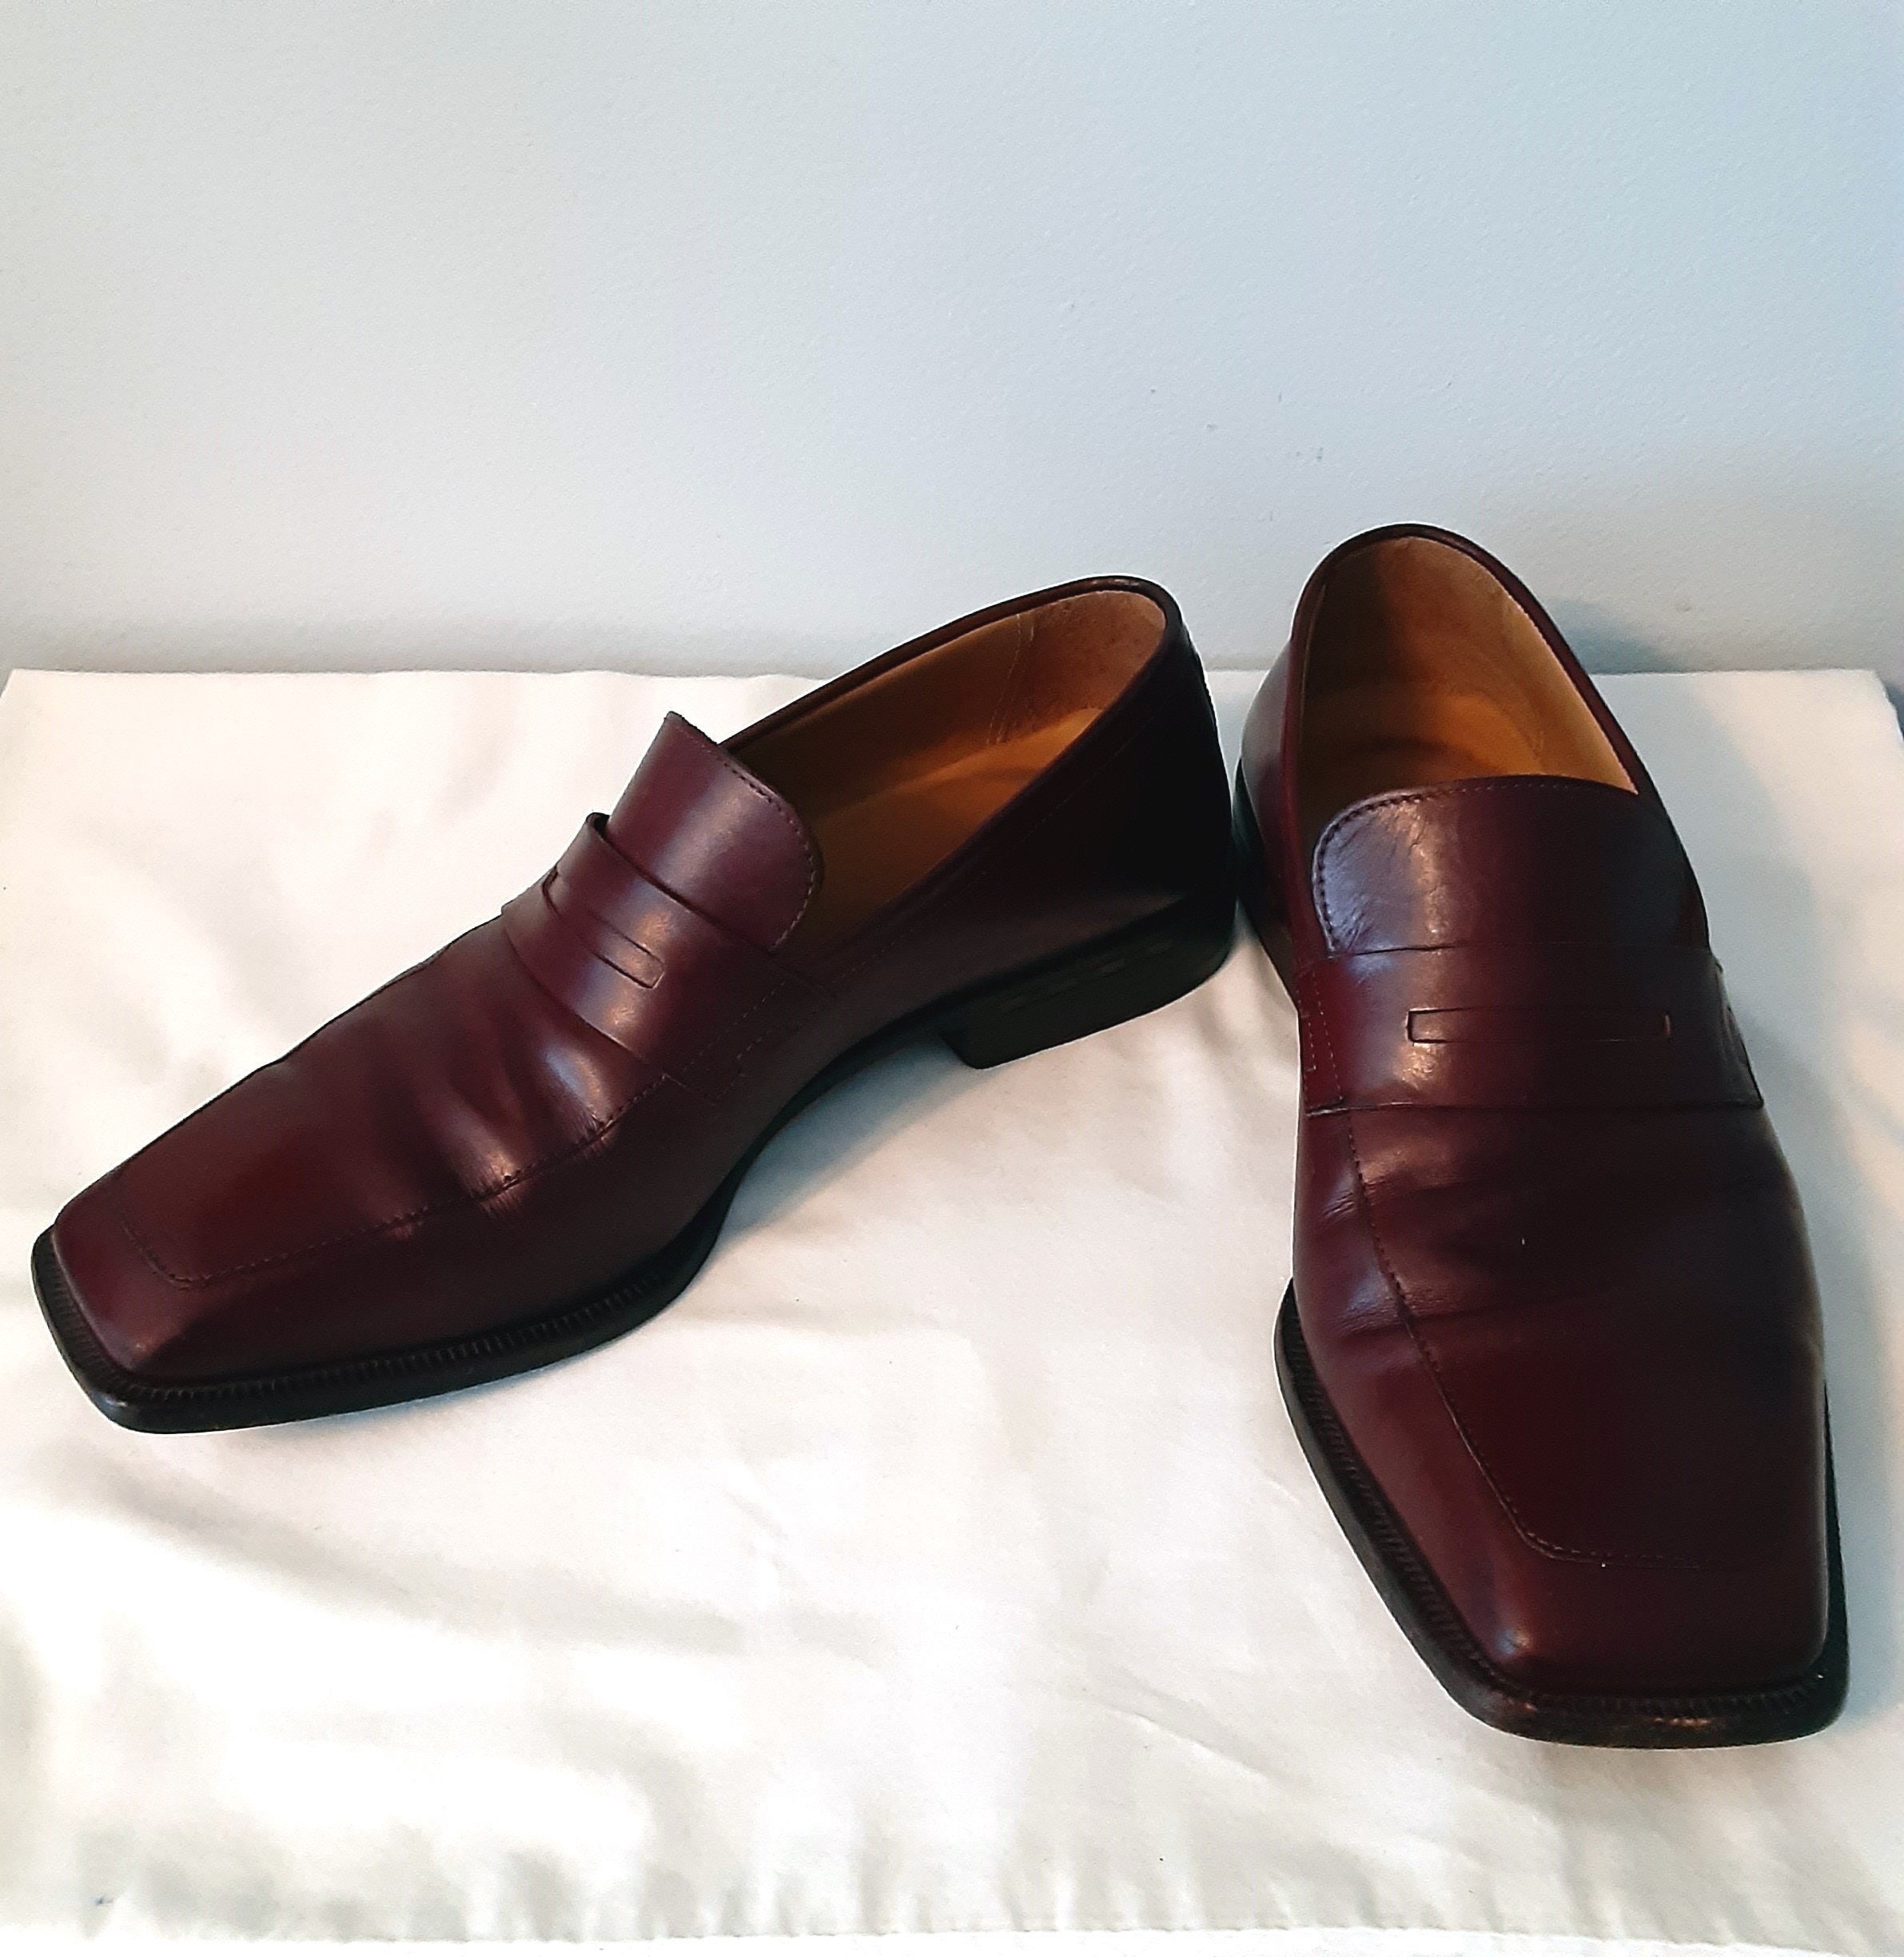 Authentic Louis Vuitton Men Dress Shoes Size 8.5